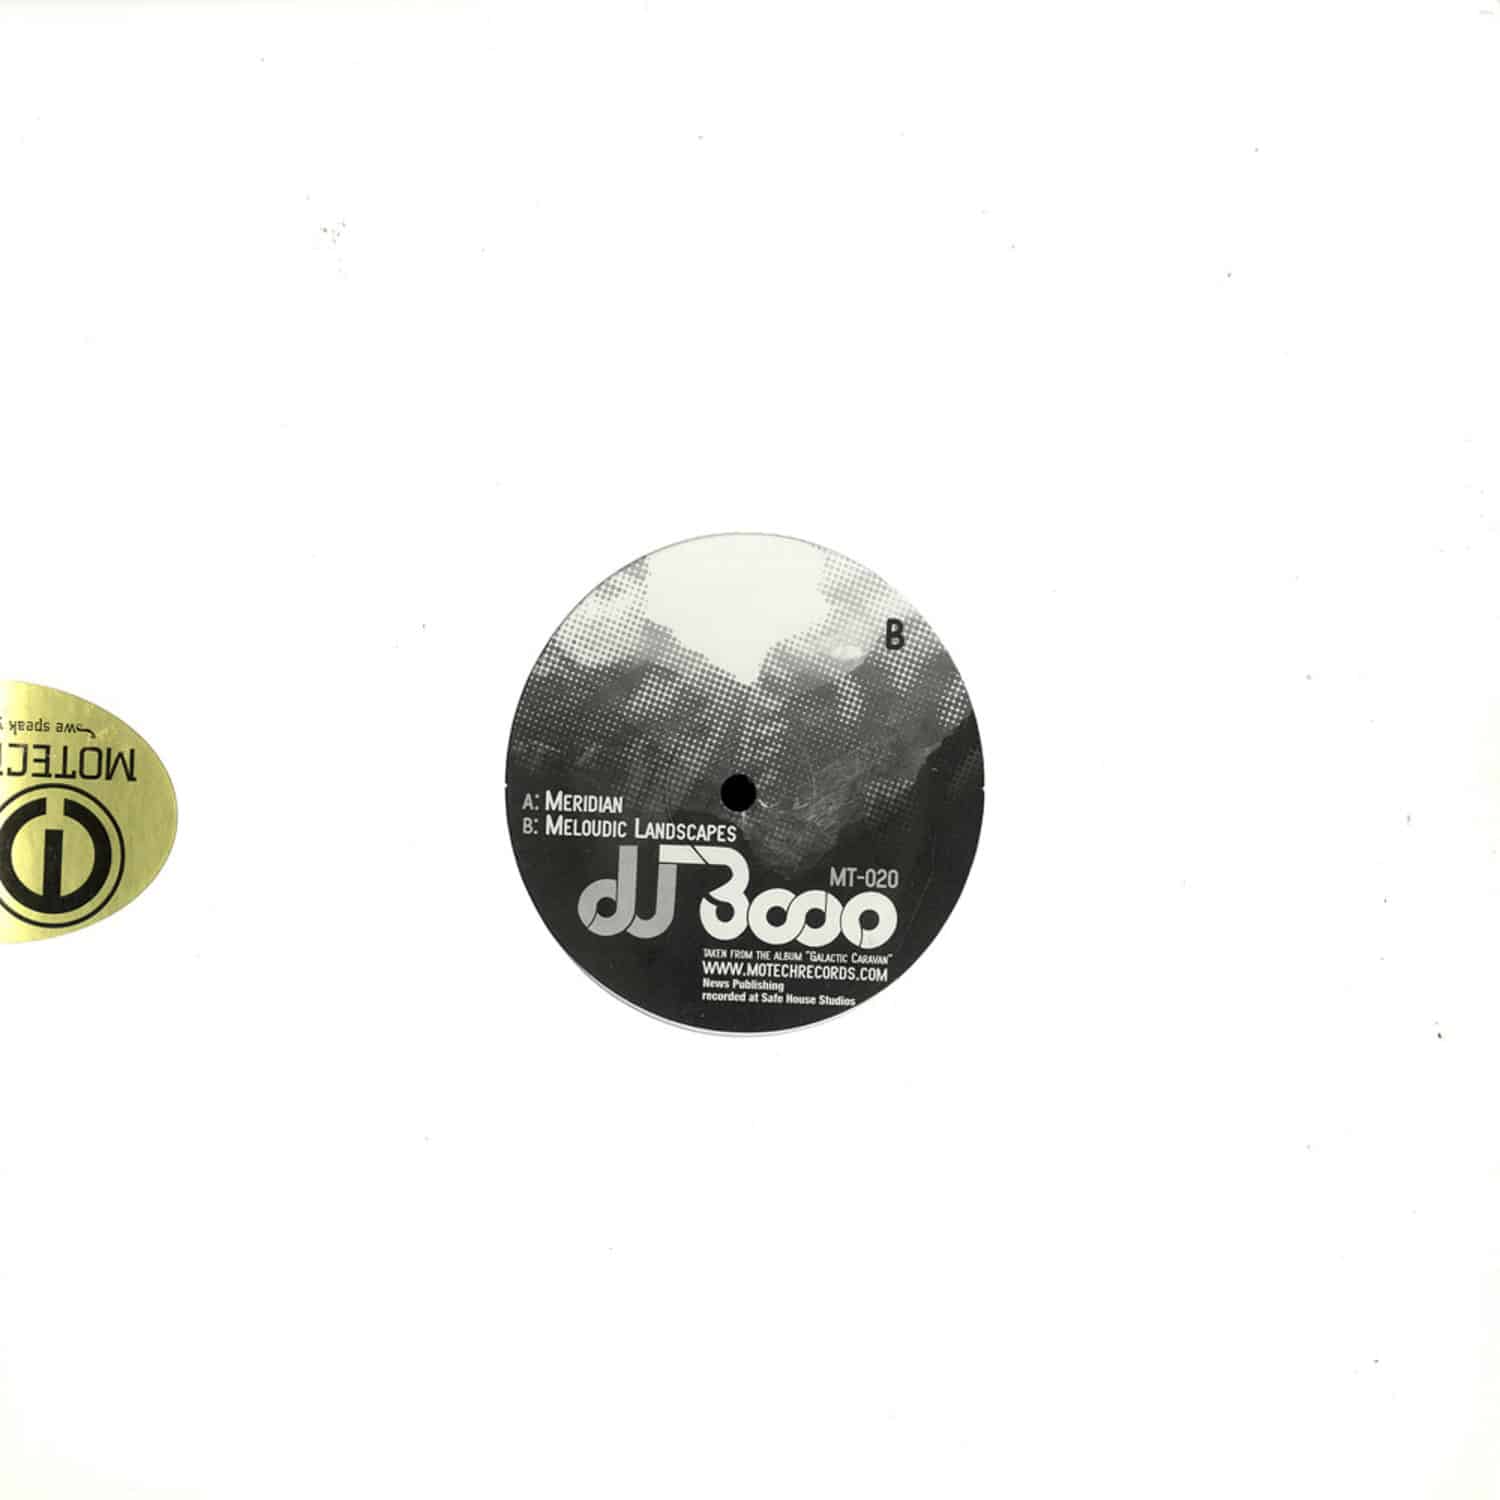 DJ 3000 - MERIDIAN